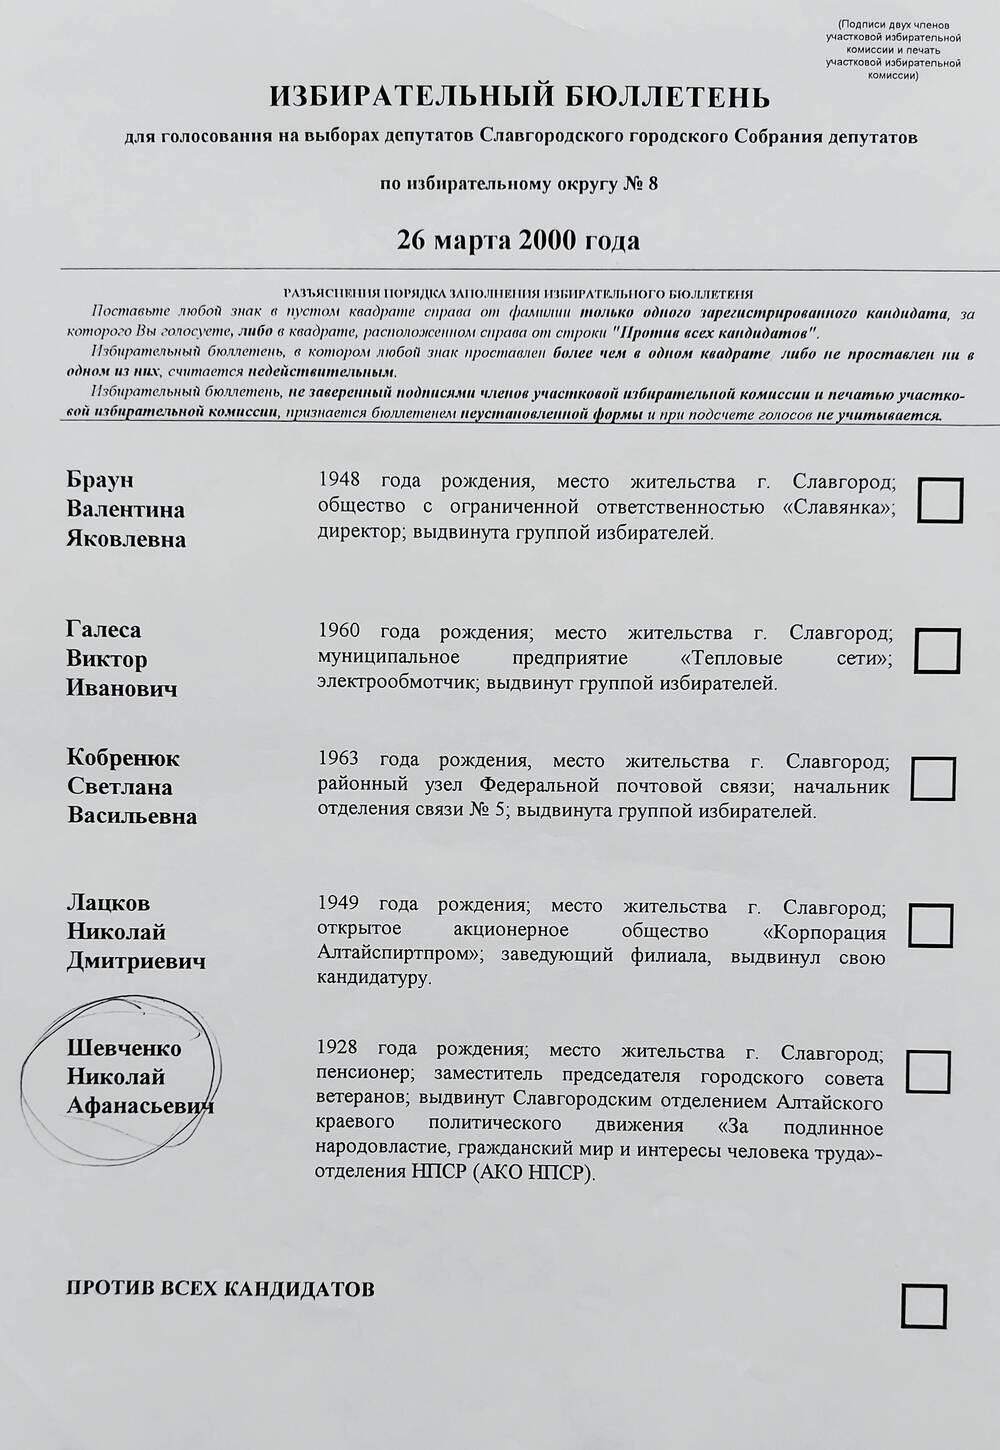 Бюллетень избирательный для голосования на выборах депутатов Славгородского городского Собрания депутатов по избирательному округу № 8 от 26 марта 2000 года.